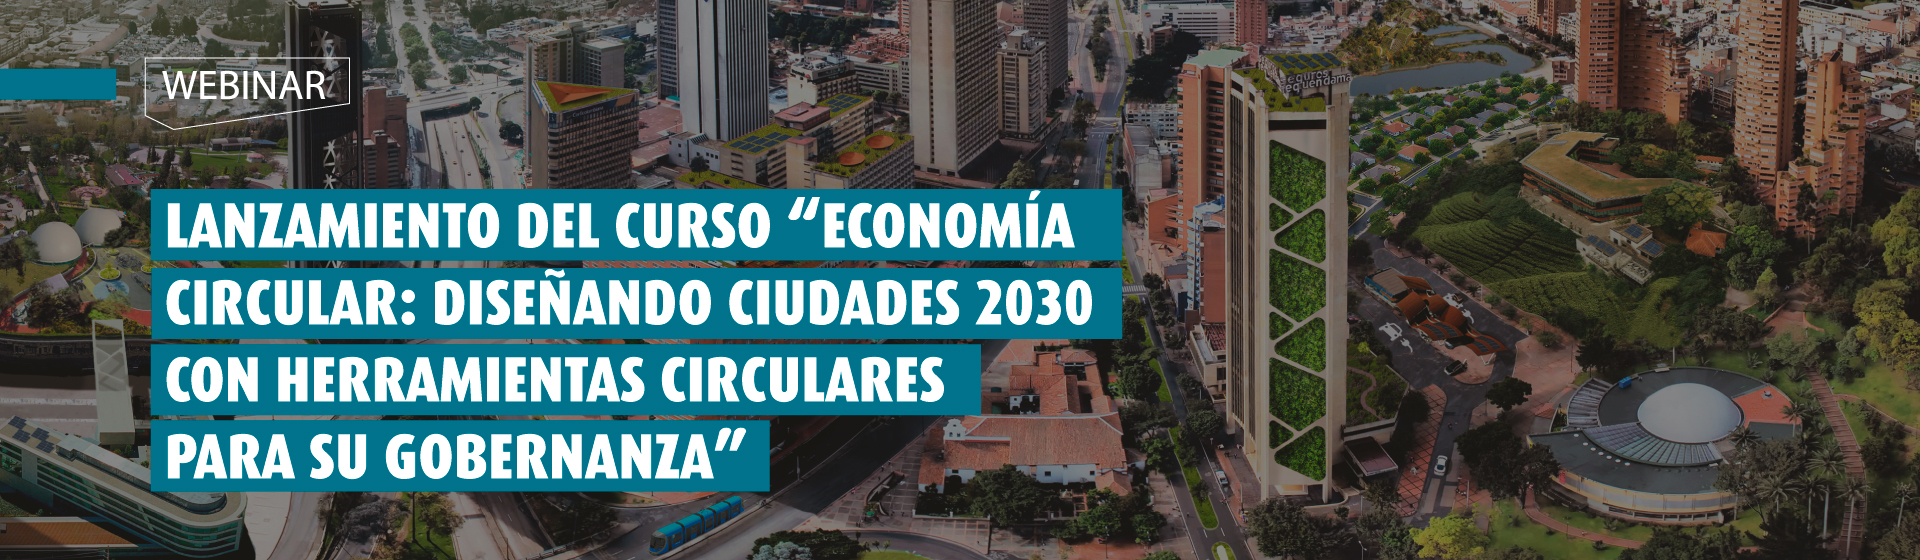 Economía circular: Diseñando ciudades 2030 con herramientas circulares para su gobernanza- Cider | Uniandes